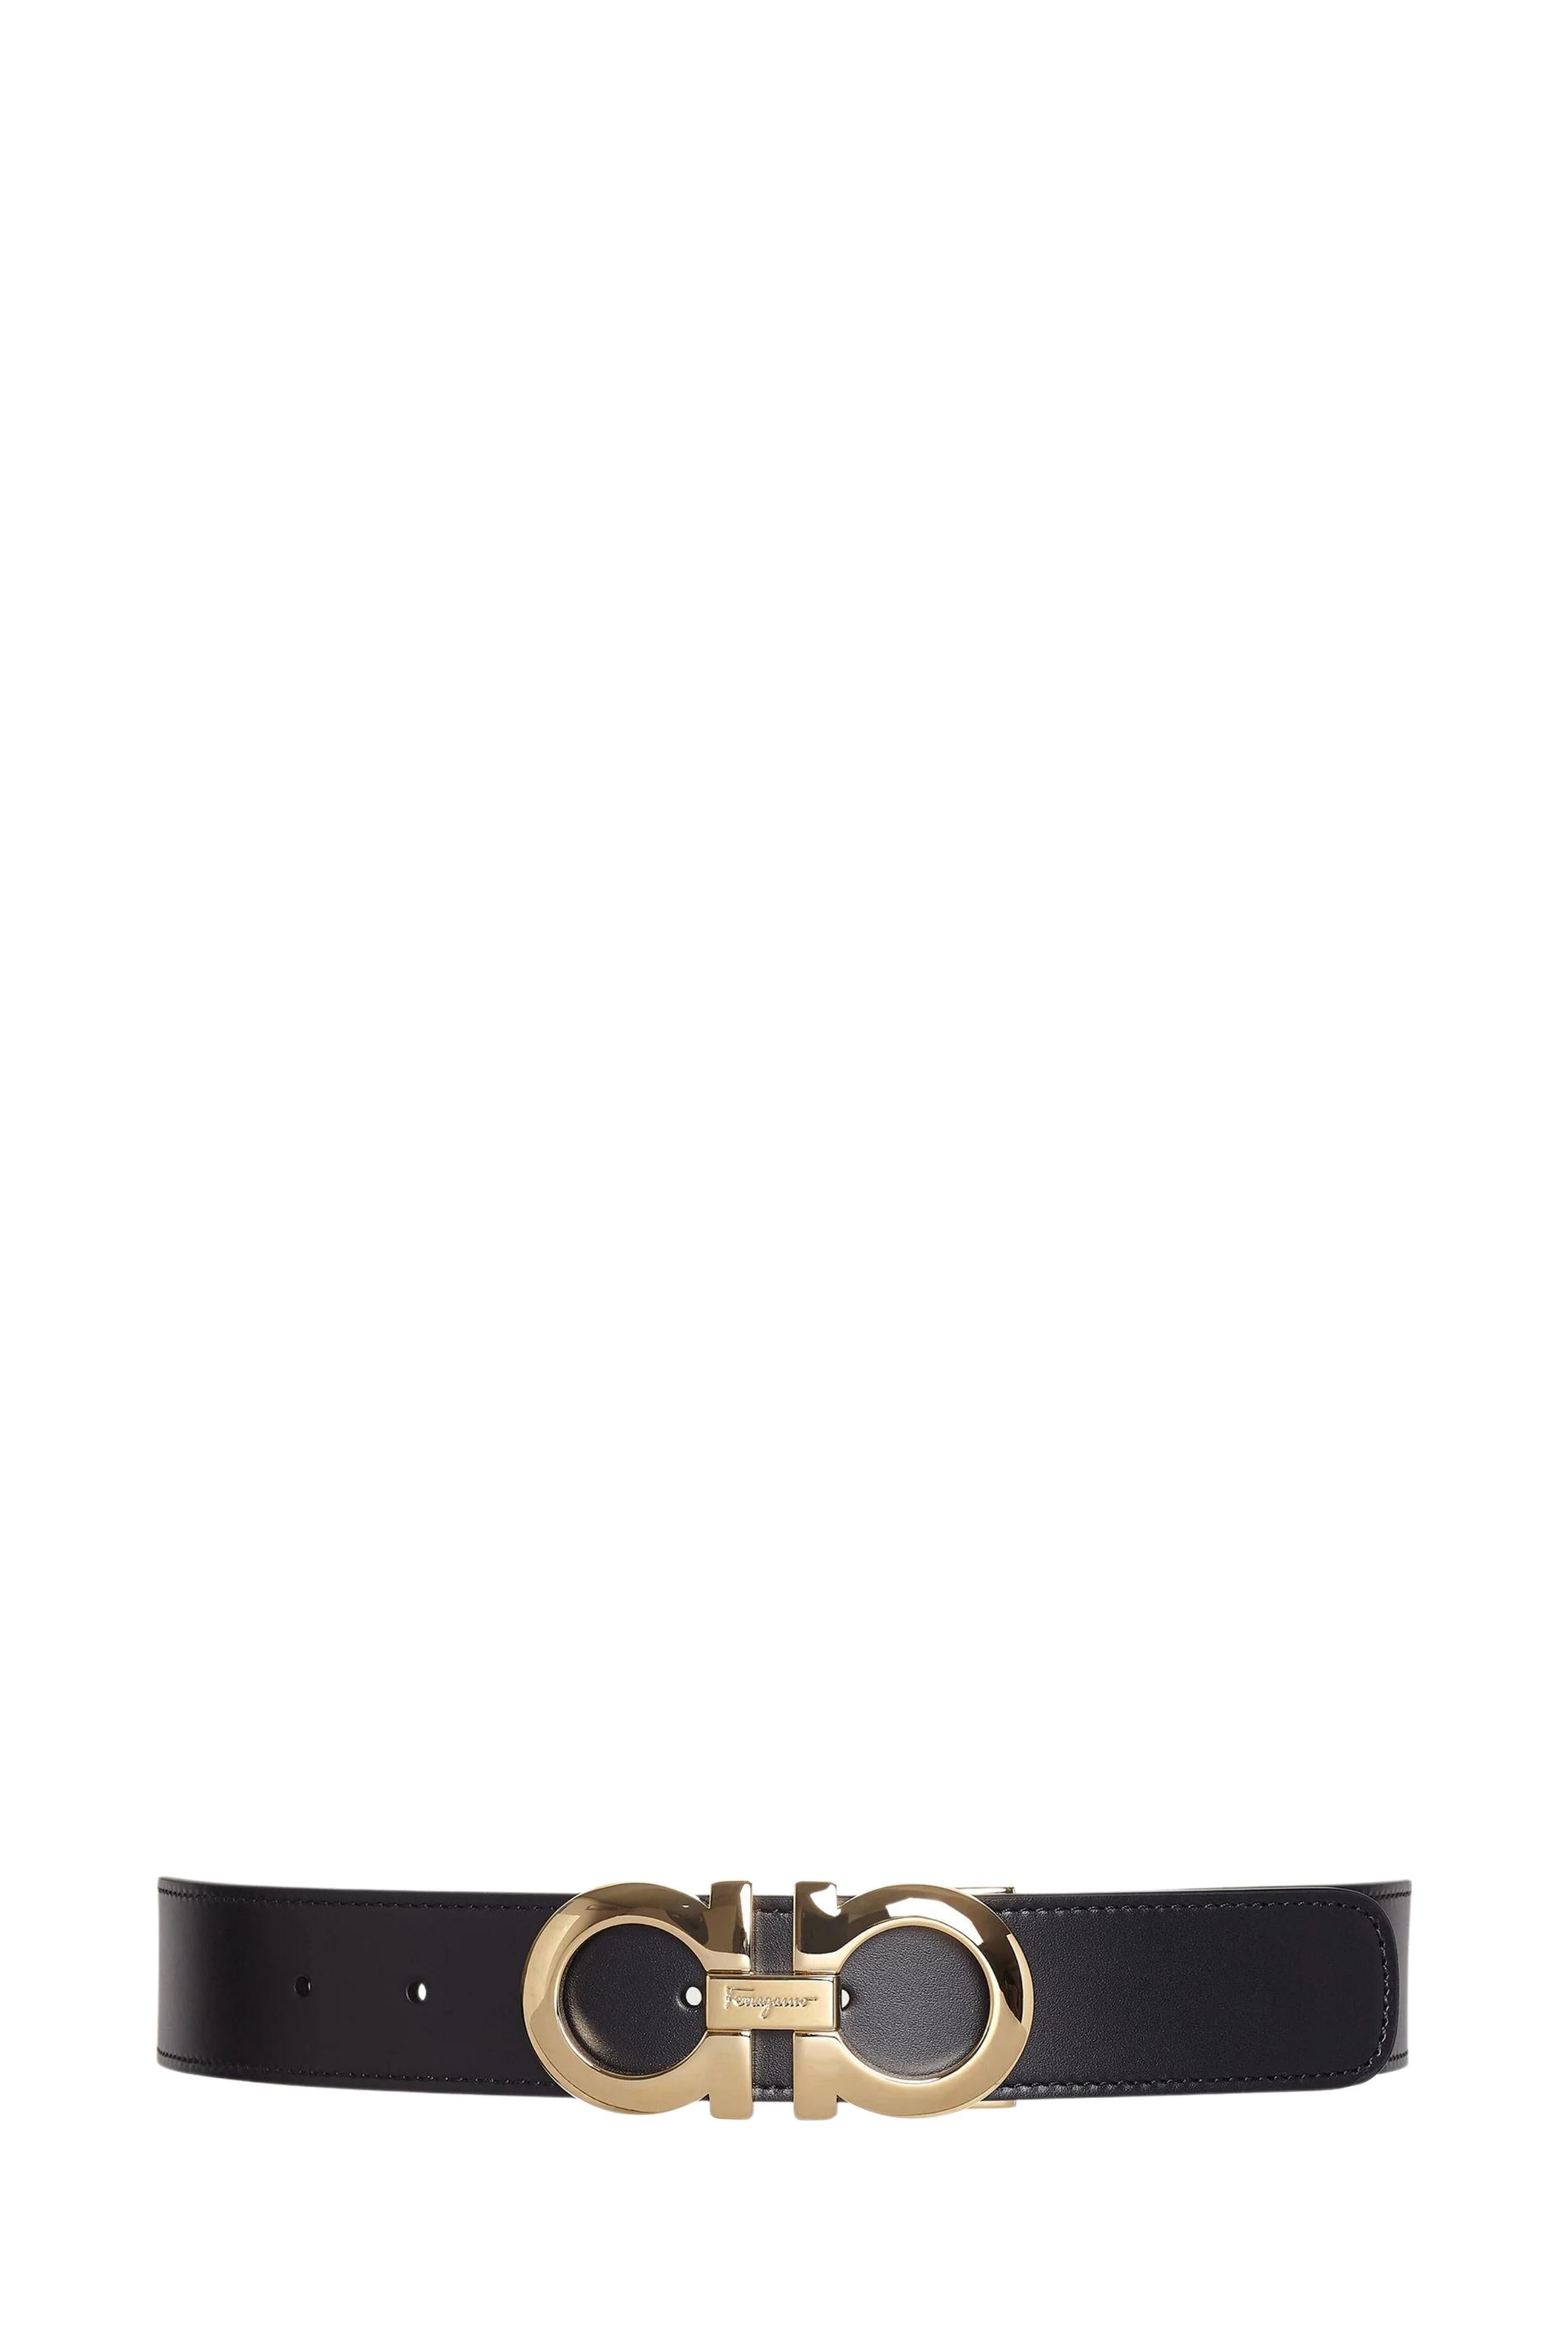 Salvatore Ferragamo Reversible Gancini Belt In Leather Gold Logo | ModeSens